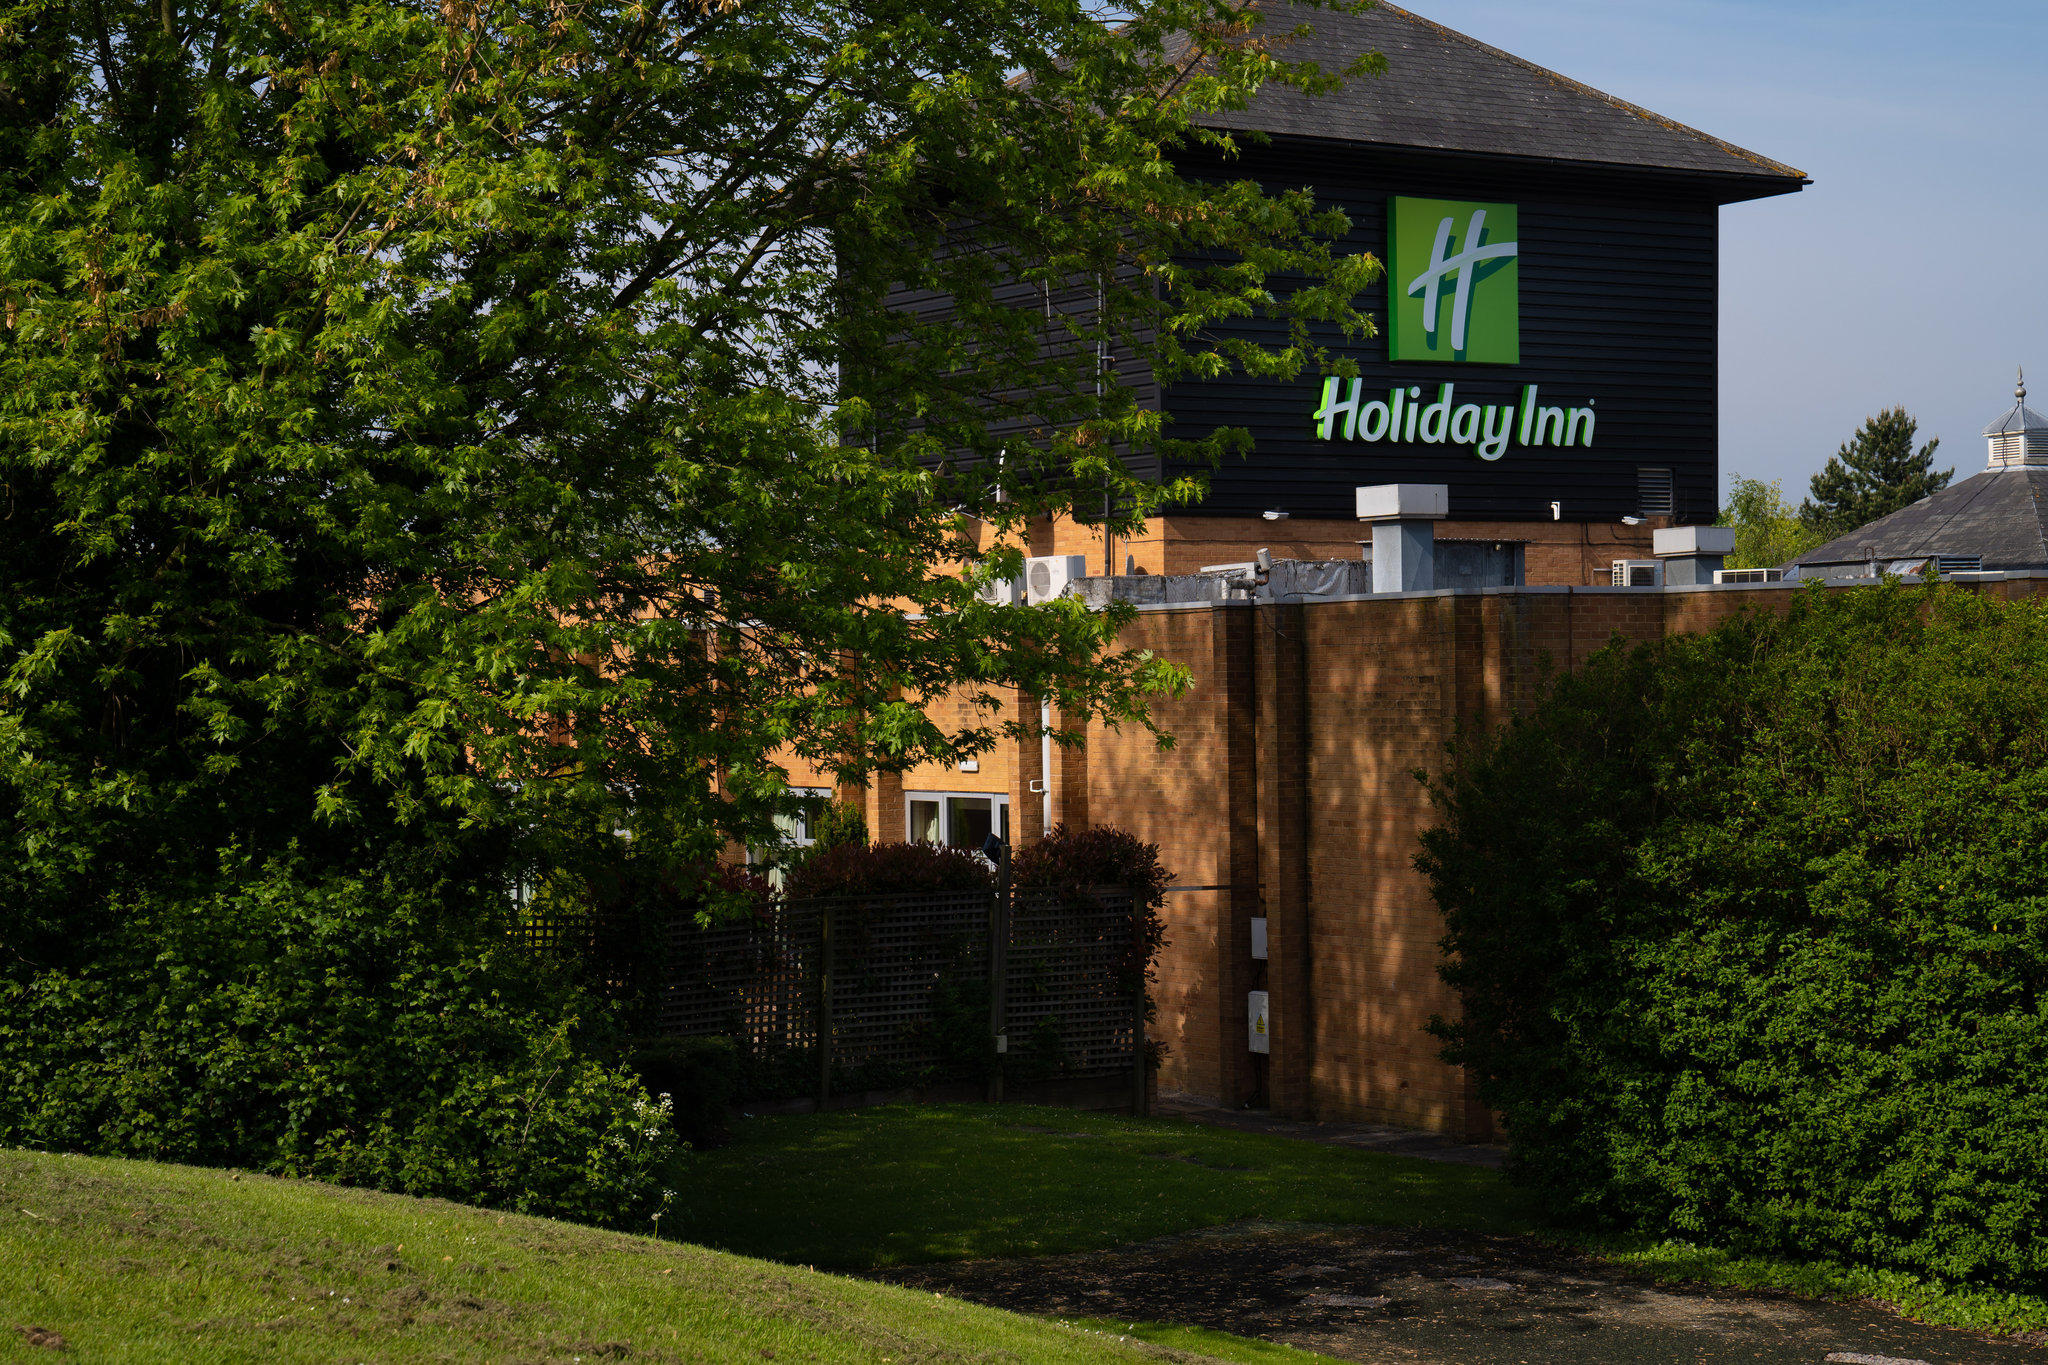 Holiday Inn Gloucester - Cheltenham, an IHG Hotel Gloucester 01452 933700